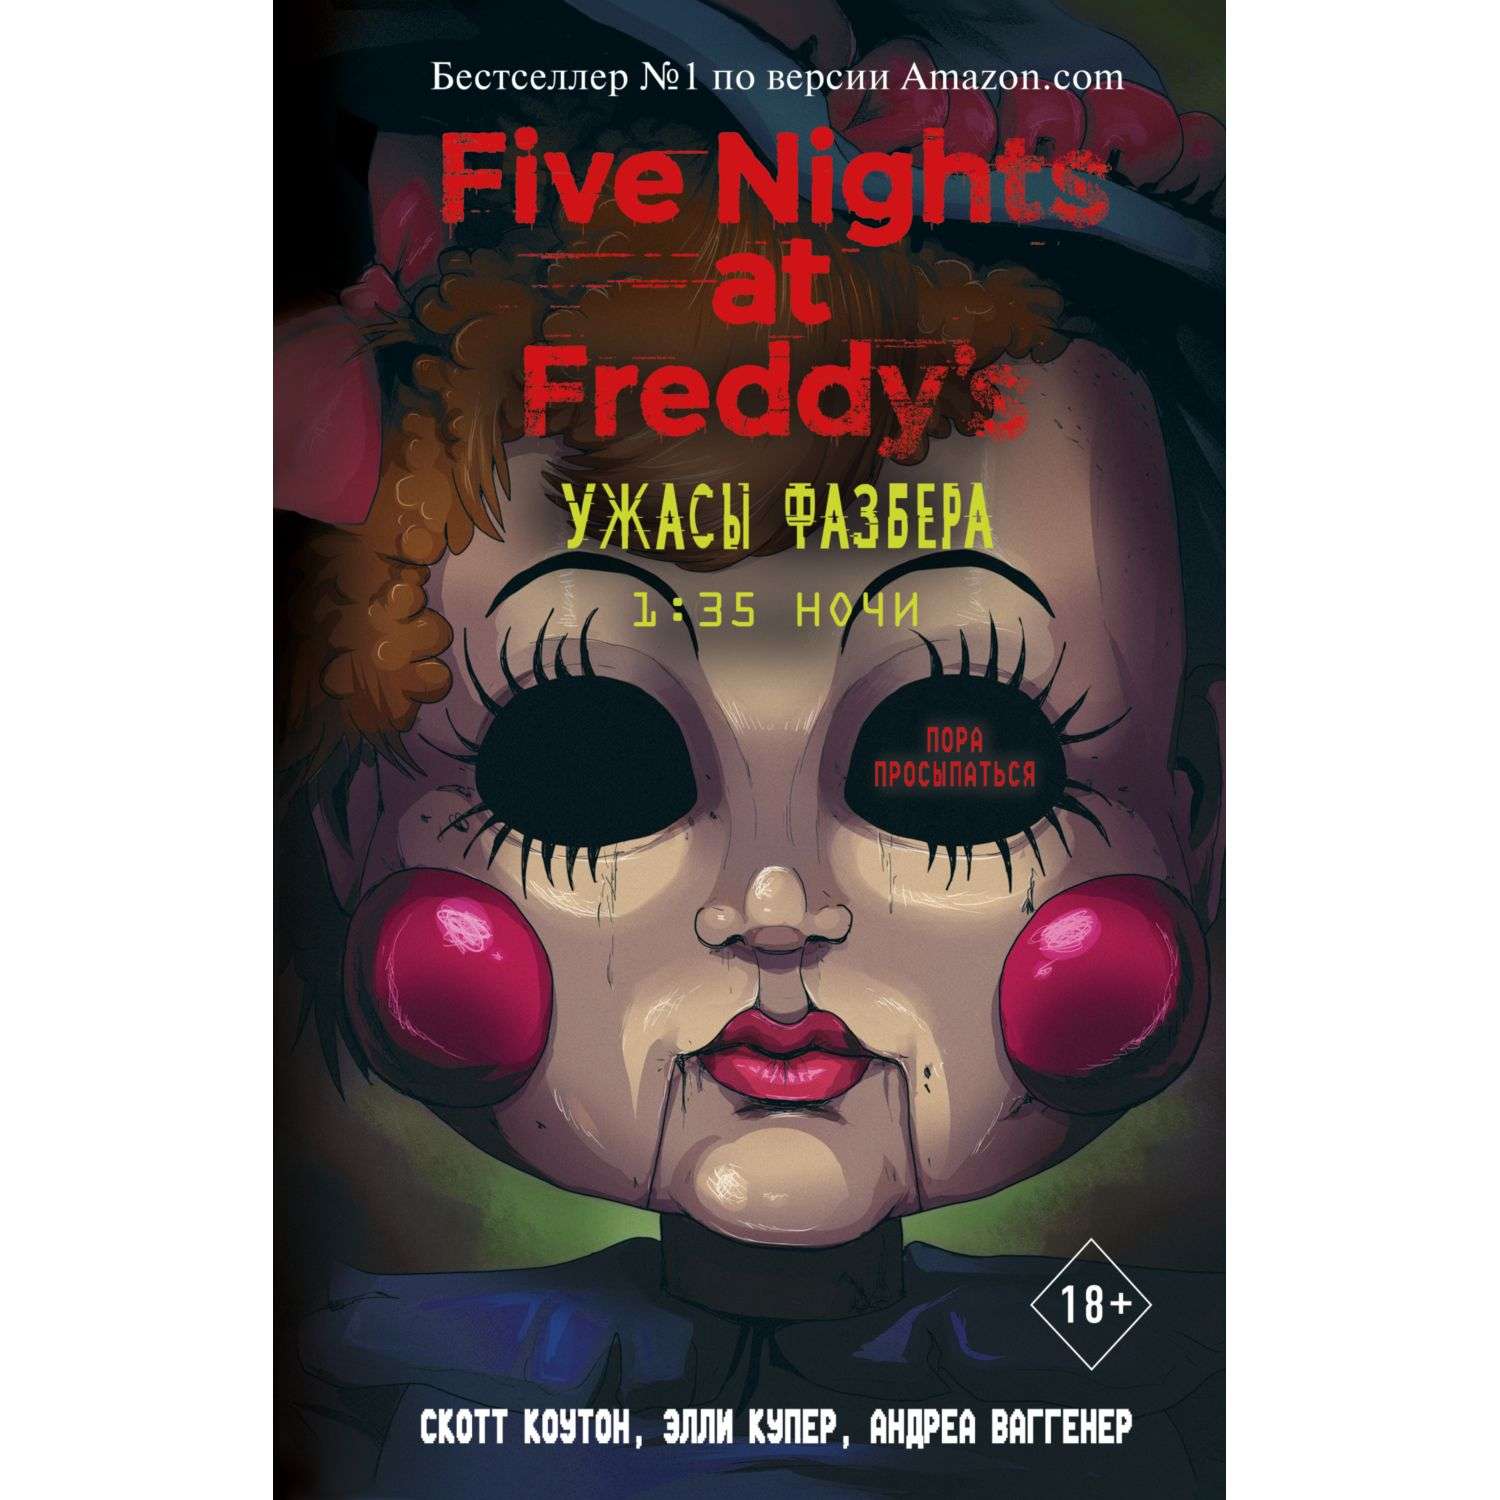 Книга Эксмо Ужасы Фазбера 1 35 ночи Five Nights at Freddy s - фото 1